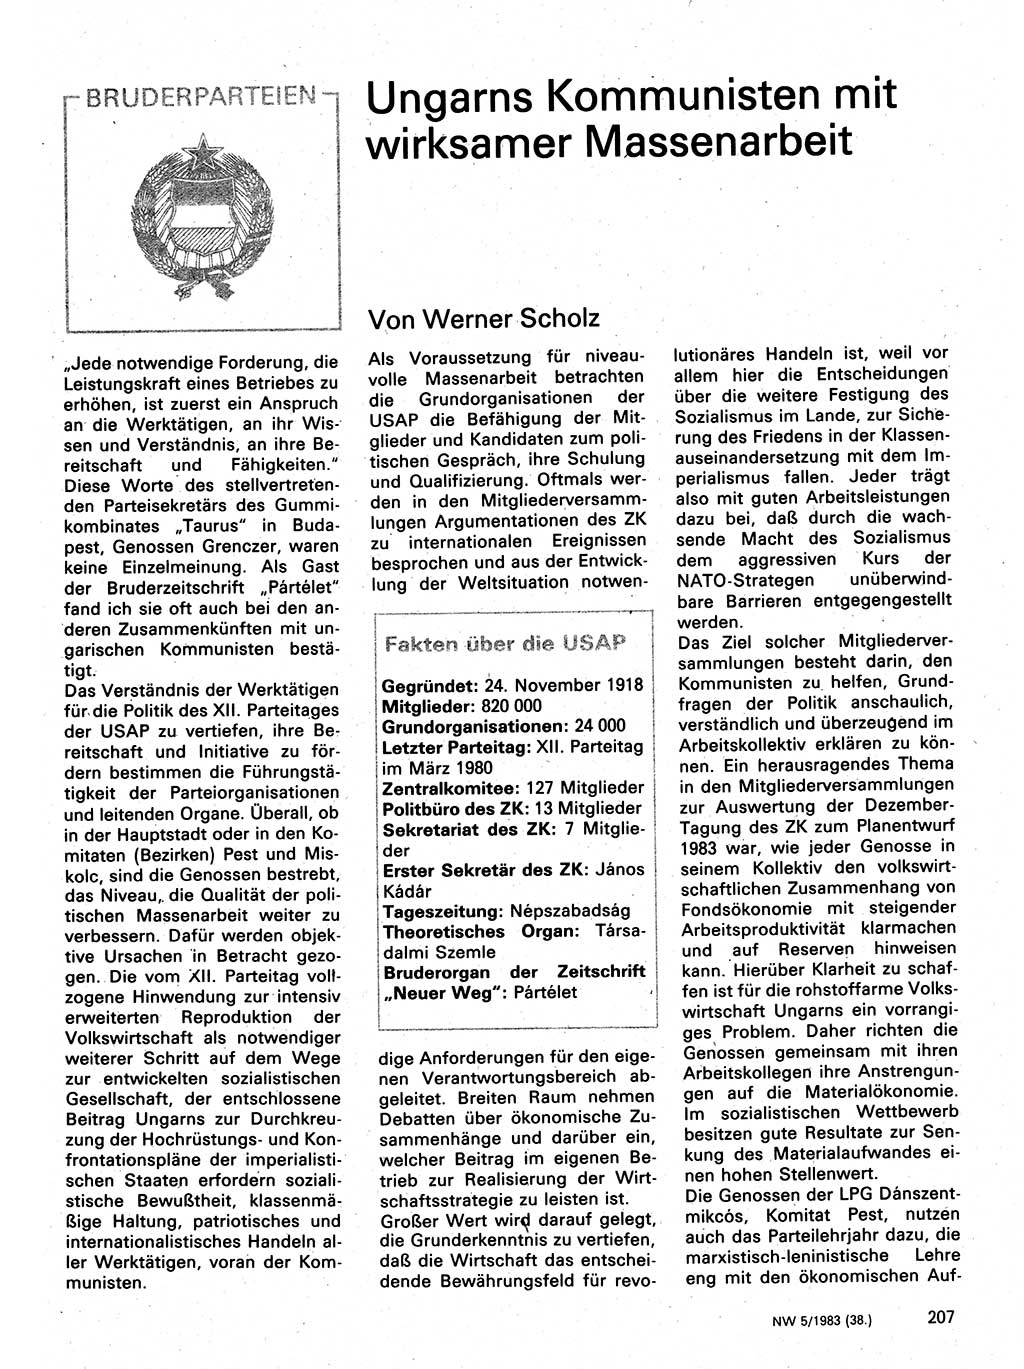 Neuer Weg (NW), Organ des Zentralkomitees (ZK) der SED (Sozialistische Einheitspartei Deutschlands) für Fragen des Parteilebens, 38. Jahrgang [Deutsche Demokratische Republik (DDR)] 1983, Seite 207 (NW ZK SED DDR 1983, S. 207)